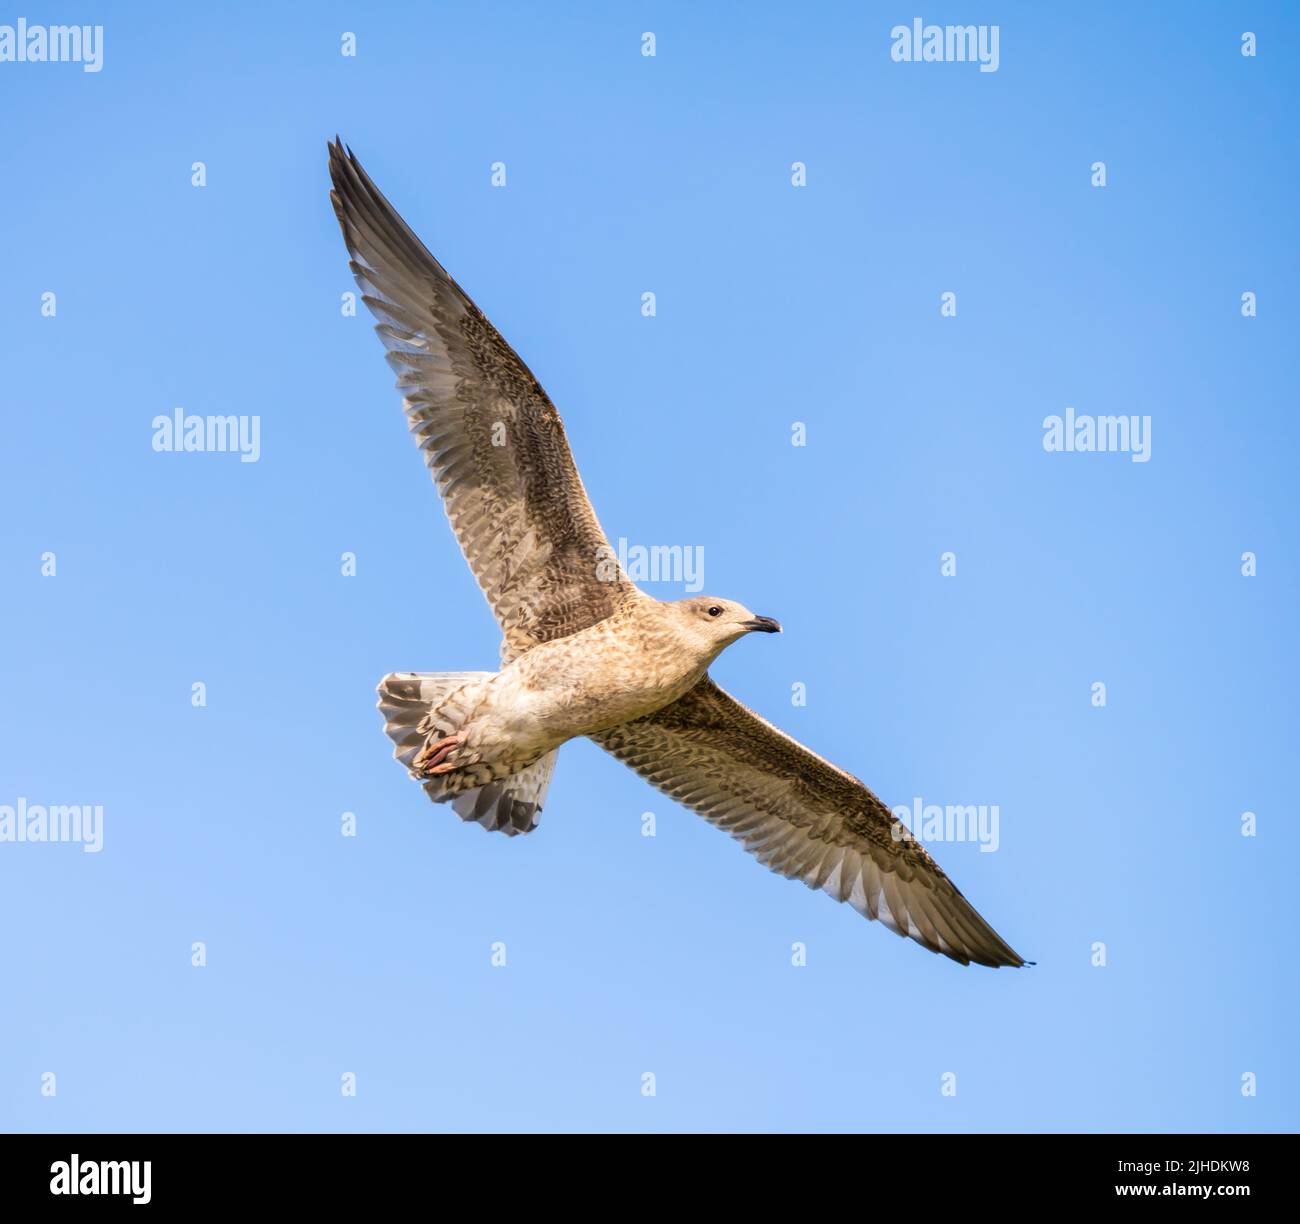 Gull di aringa giovanile (Larus argentatus) che vola, in volo, con le ali stese contro il cielo blu su una spiaggia in una giornata estiva nel Regno Unito. Foto Stock